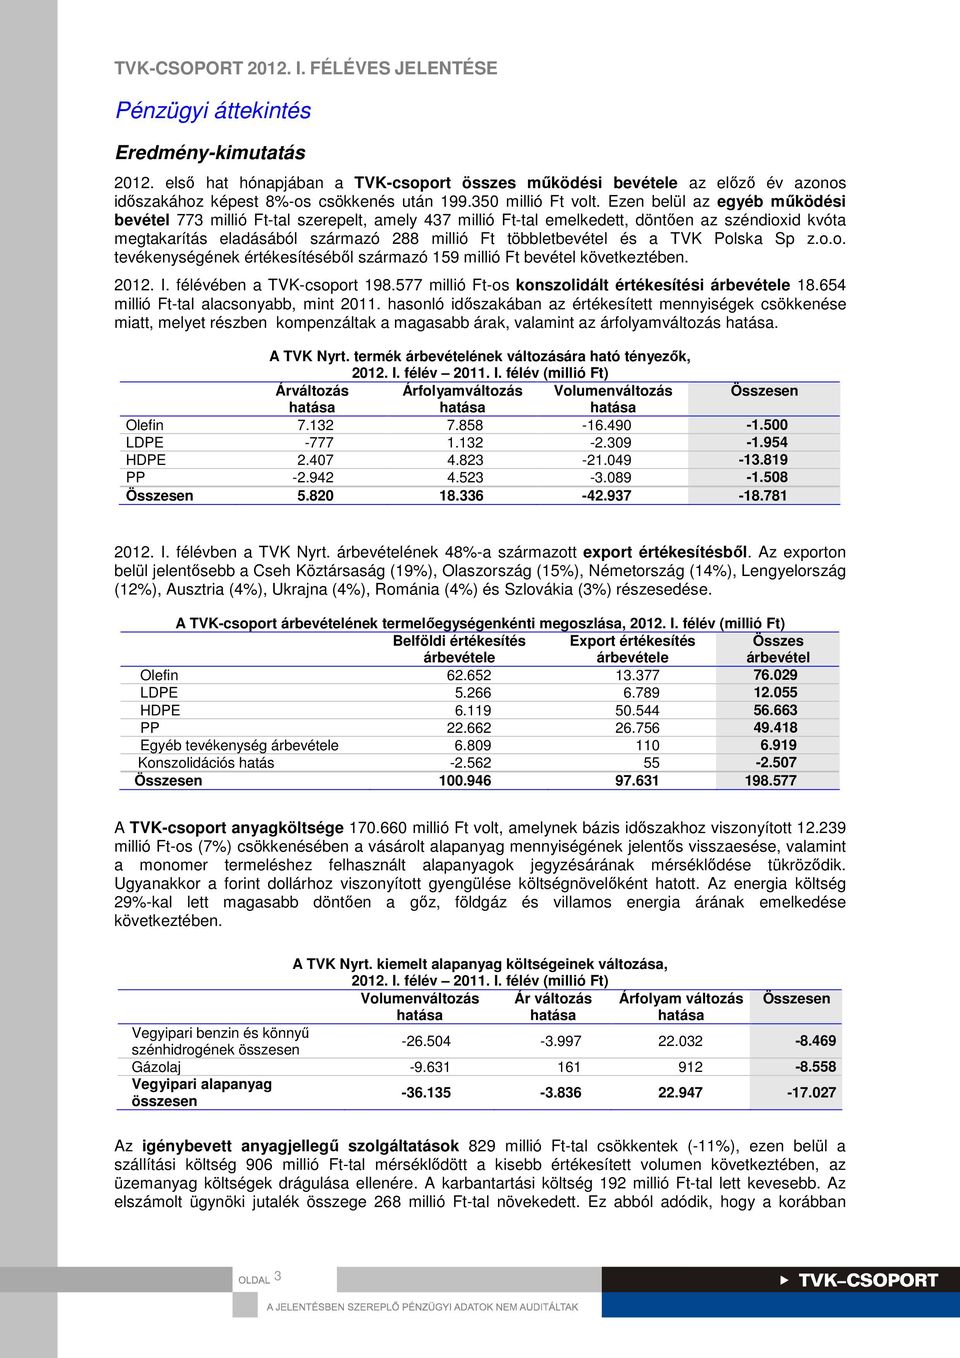 TVK Polska Sp z.o.o. tevékenységének értékesítéséből származó 159 millió Ft bevétel következtében. 2012. I. félévében a TVK-csoport 198.577 millió Ft-os konszolidált értékesítési árbevétele 18.